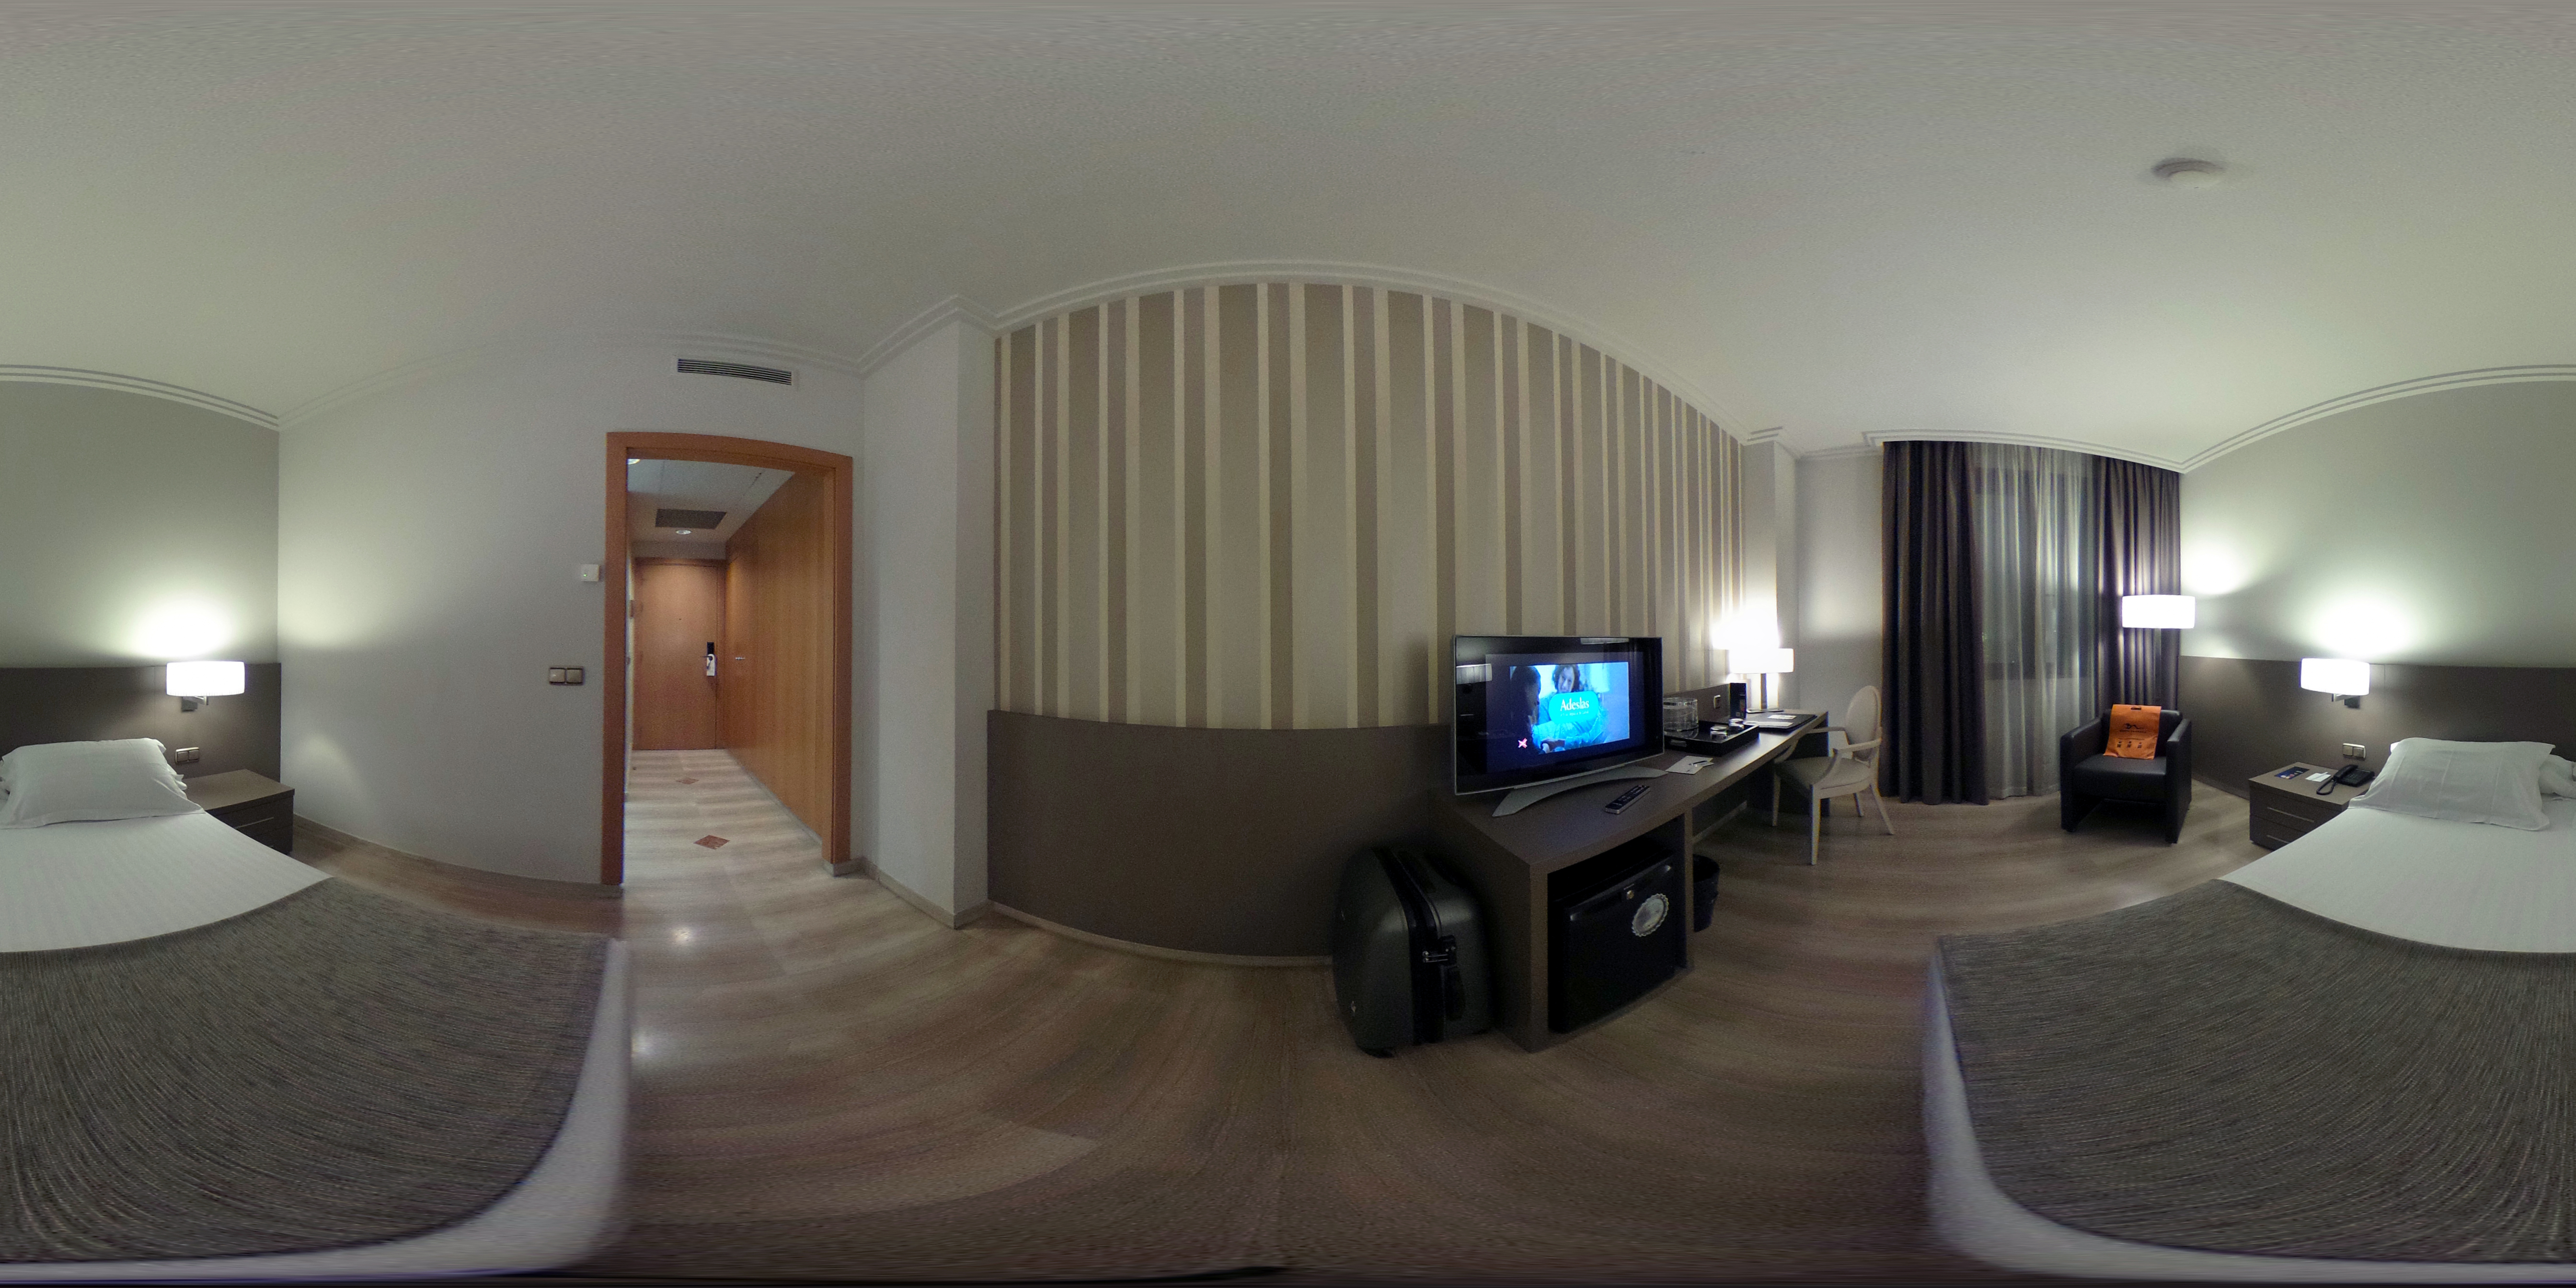 Zimmer 229 im Hotel SB Ciutat de Tarragona in 360° #theta360 #catexperienceBT